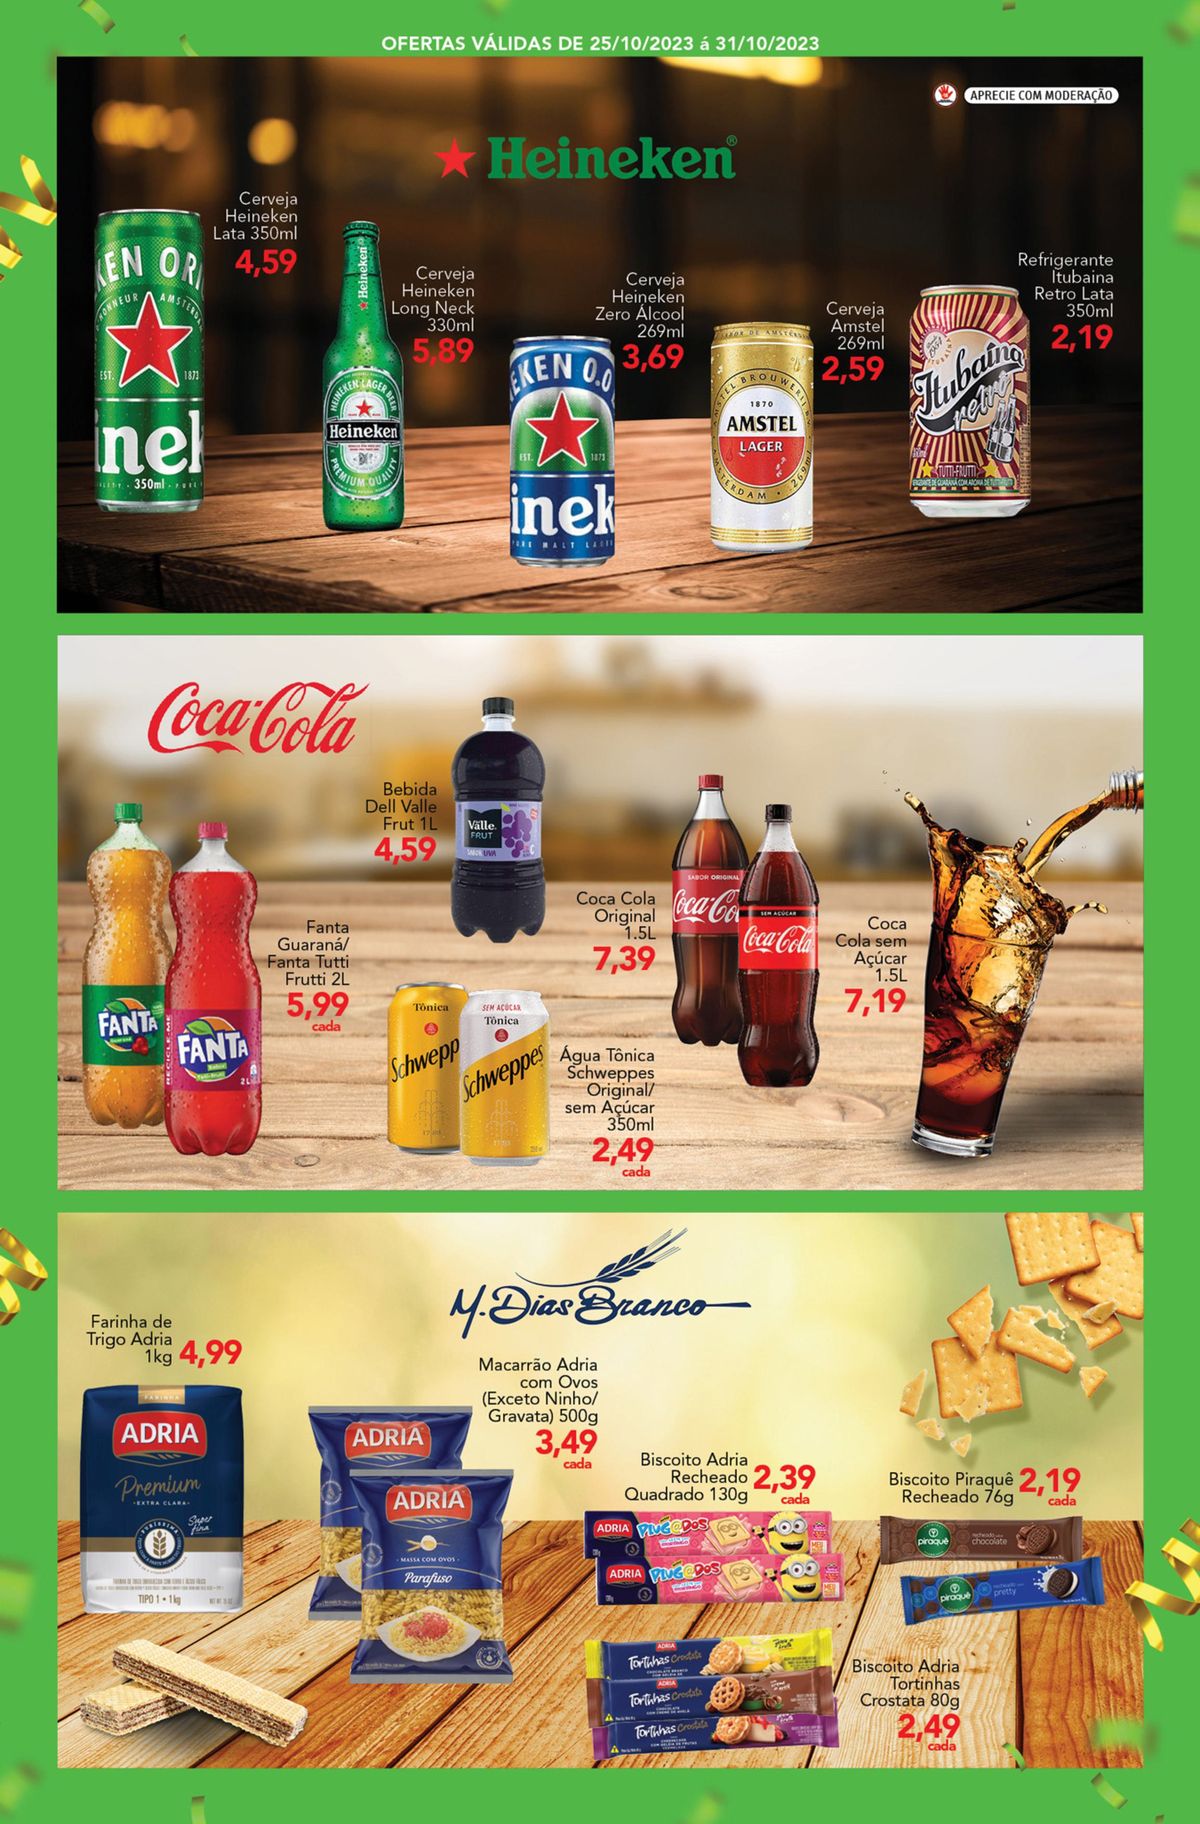 Bebidas em lata e garrafas de marcas variadas em oferta